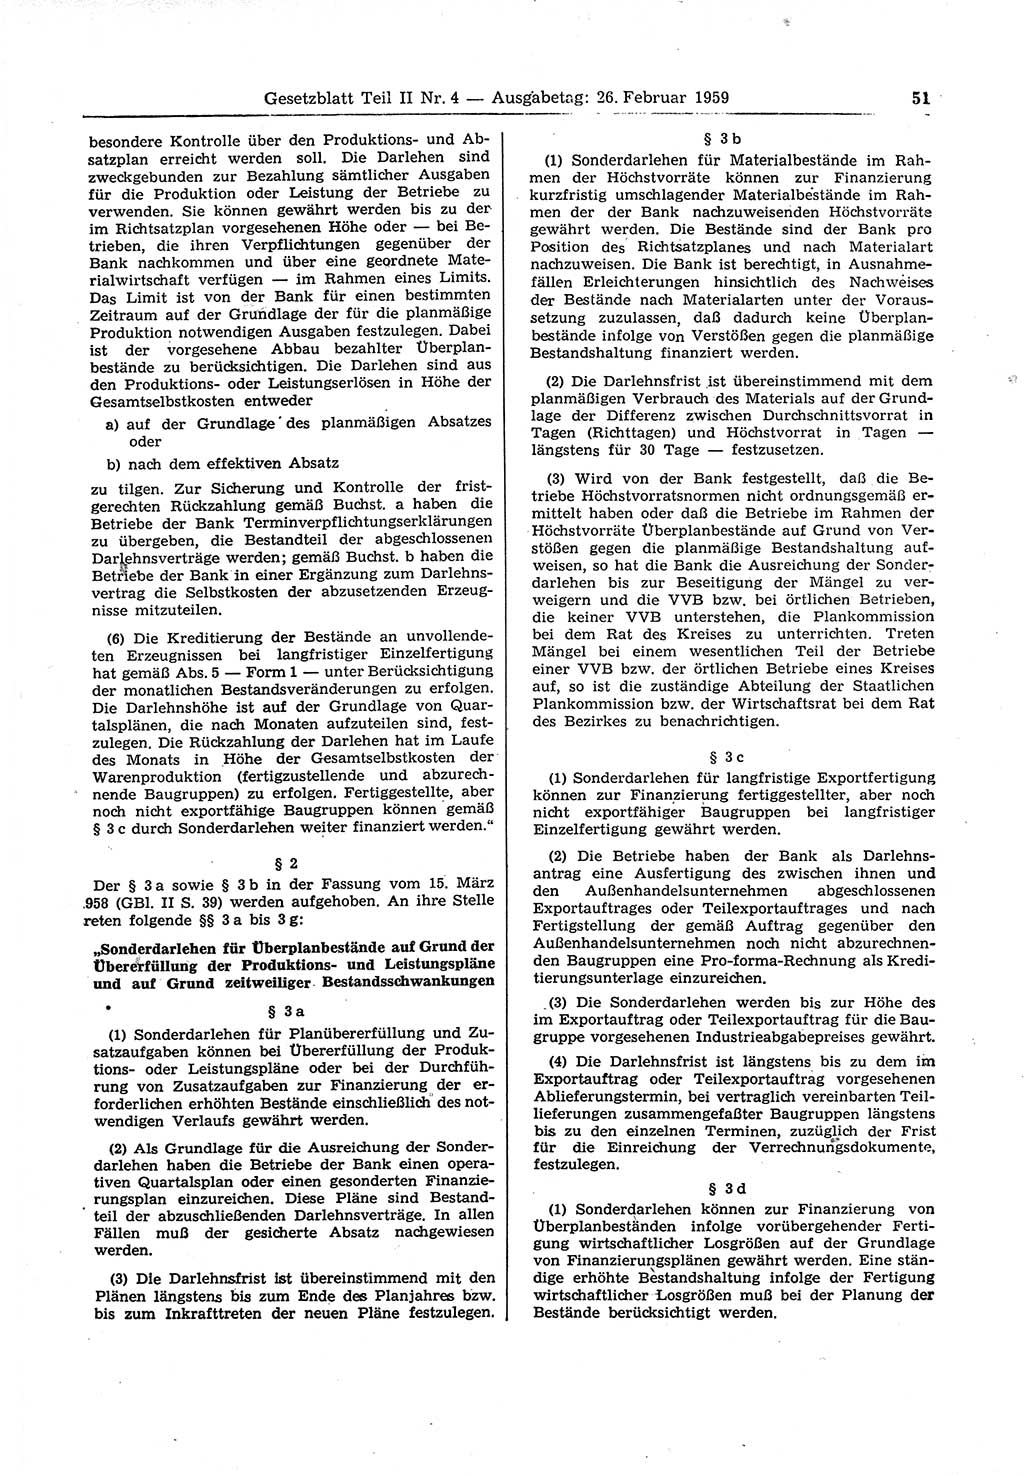 Gesetzblatt (GBl.) der Deutschen Demokratischen Republik (DDR) Teil ⅠⅠ 1959, Seite 51 (GBl. DDR ⅠⅠ 1959, S. 51)